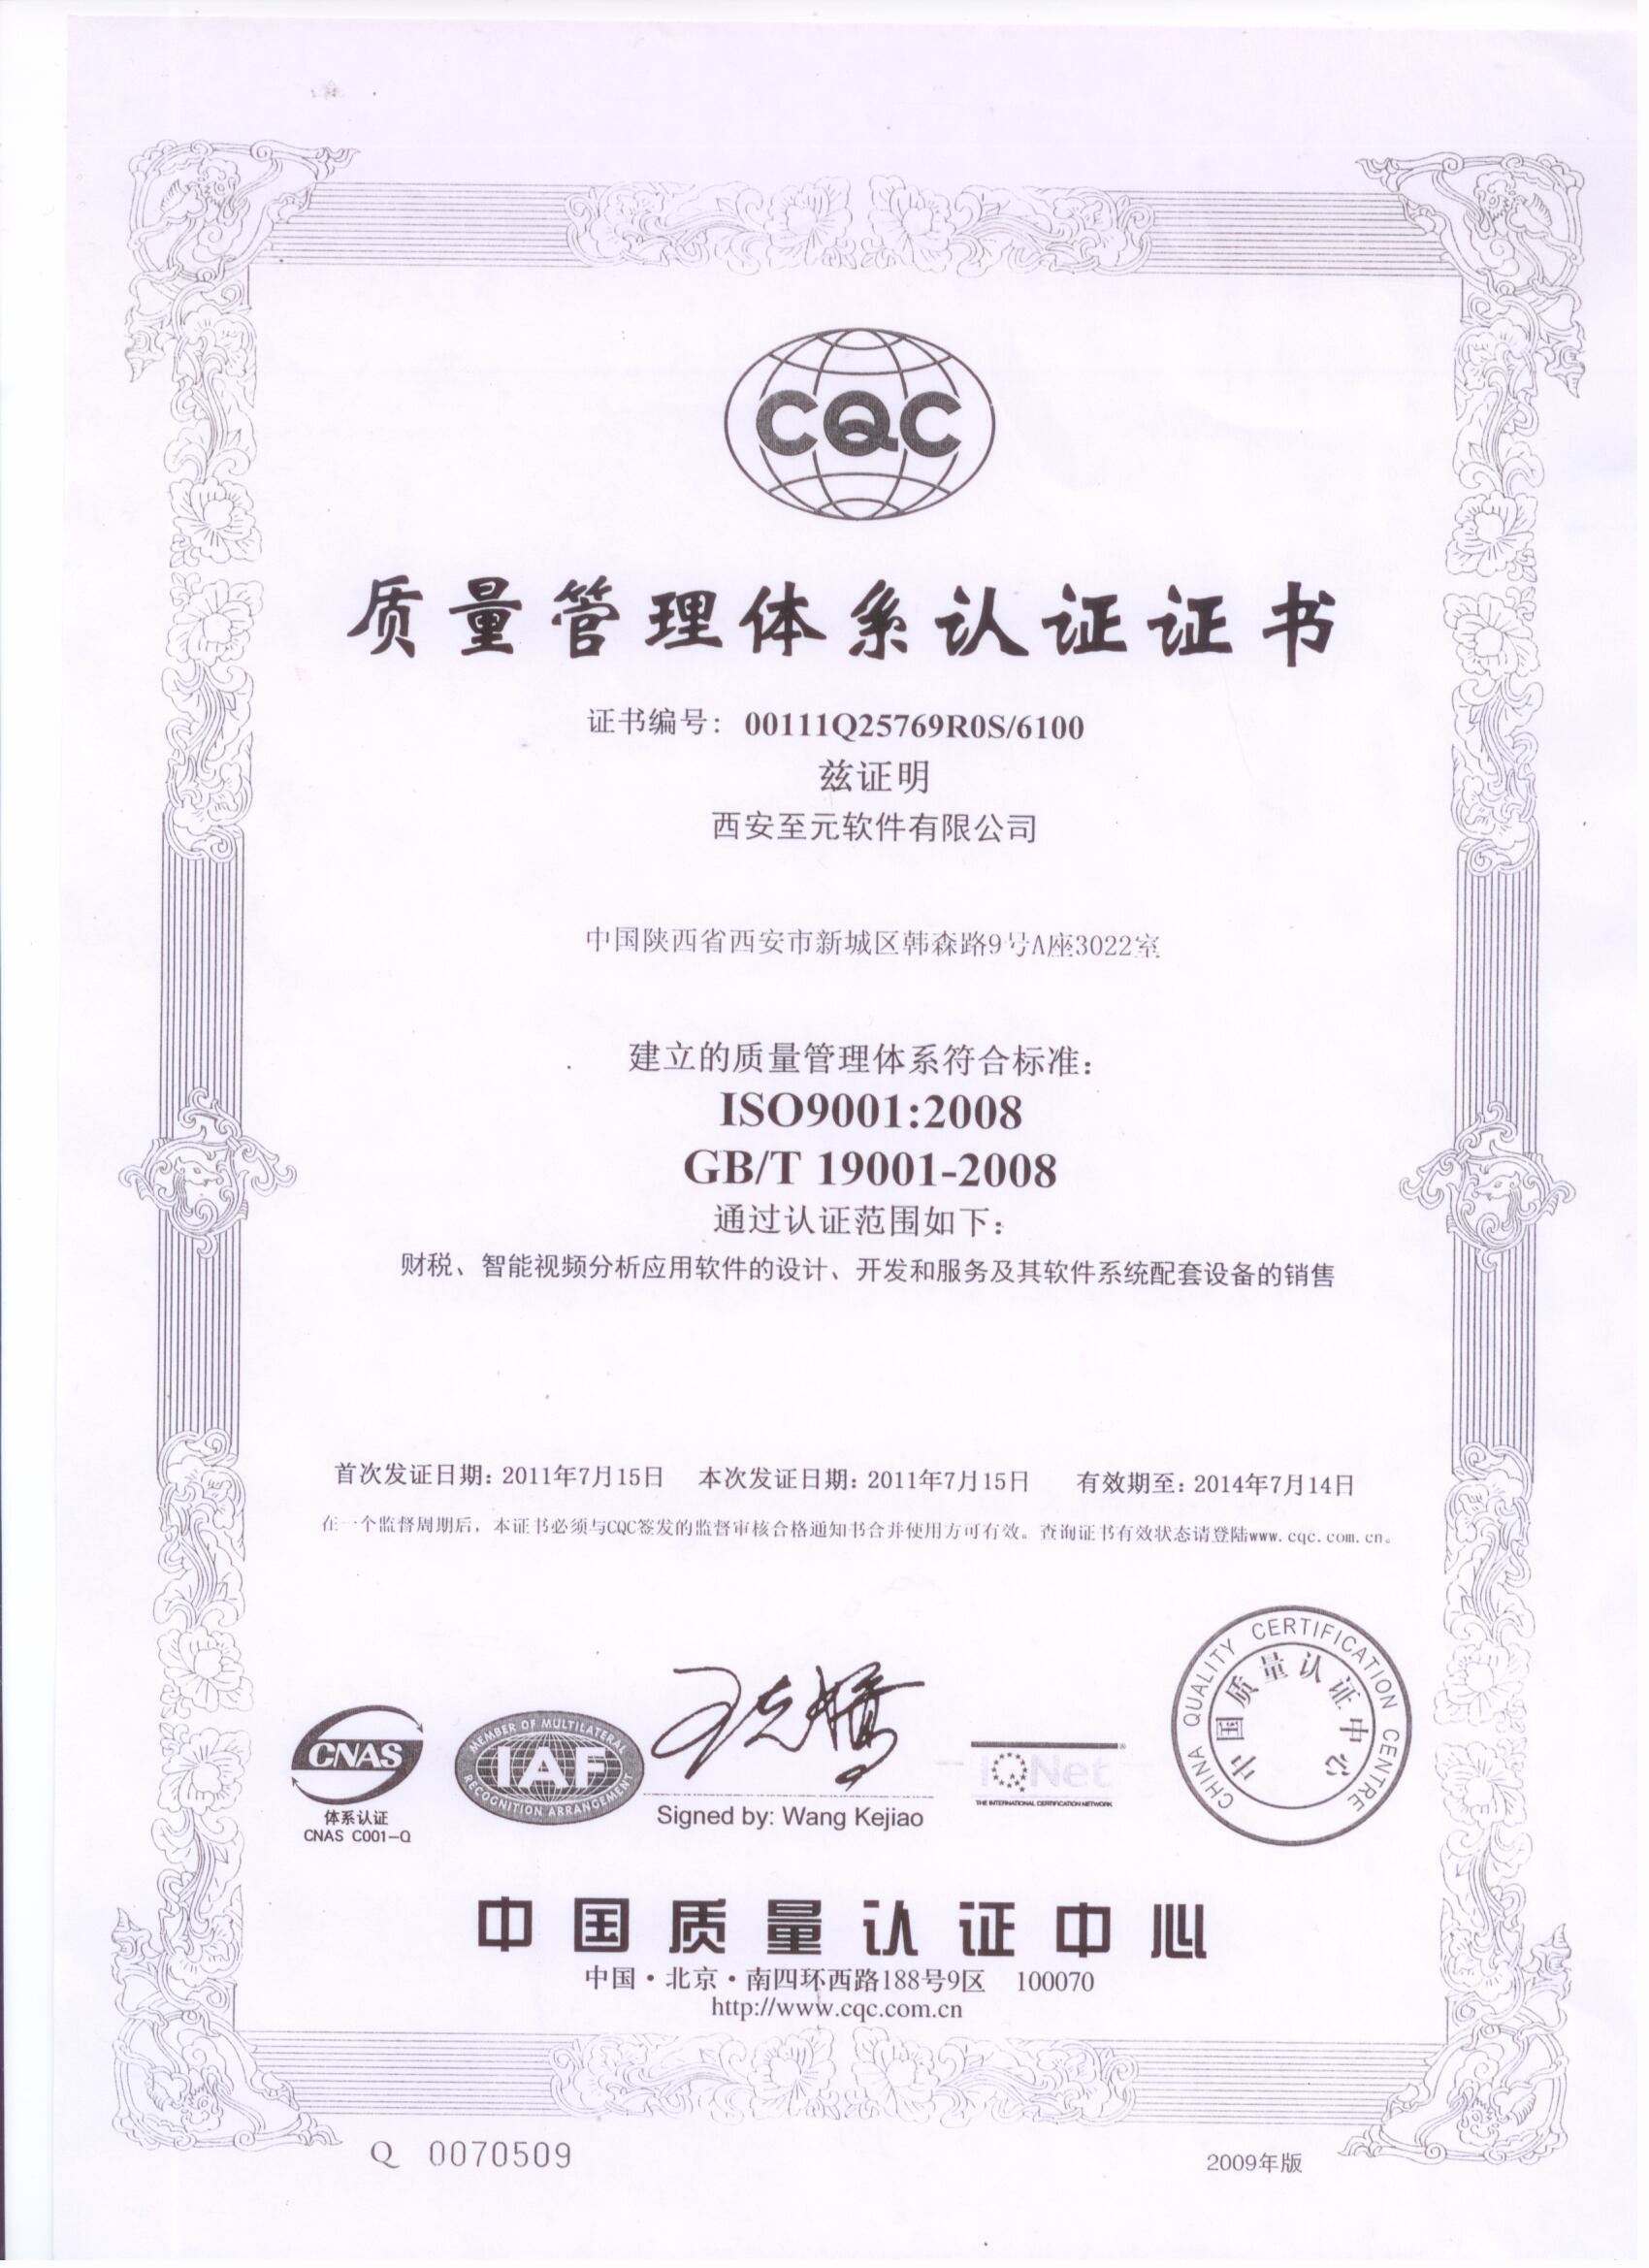 西安至元ISO認證證書